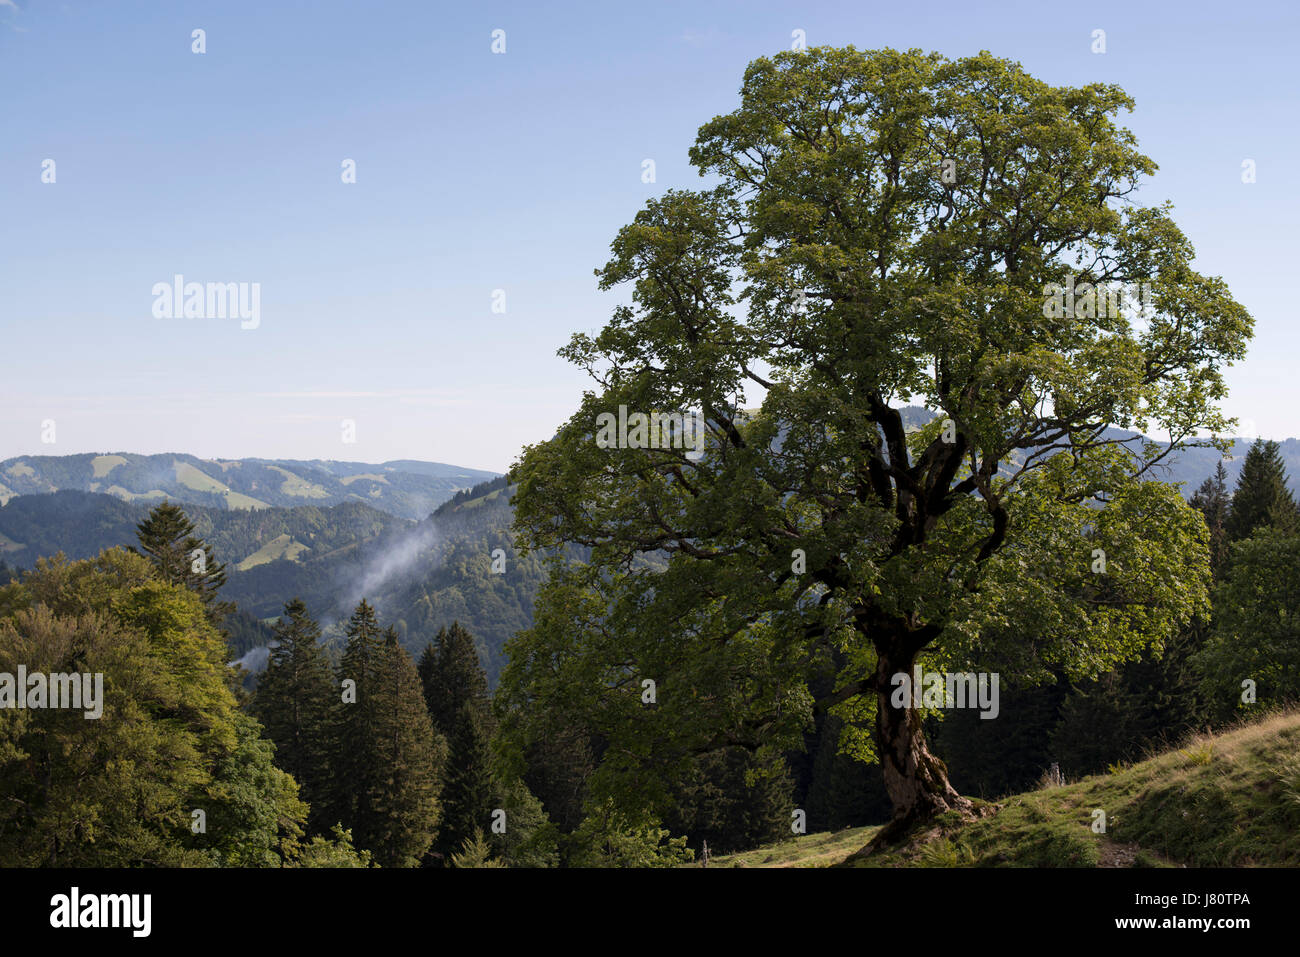 Ahornbaum beim Aufstieg auf die Nagelfluhkette, Allgäuer Alpen, Deutschland. Nature park Nagelfluhkette in the Allgäu Alps, Germany Stock Photo